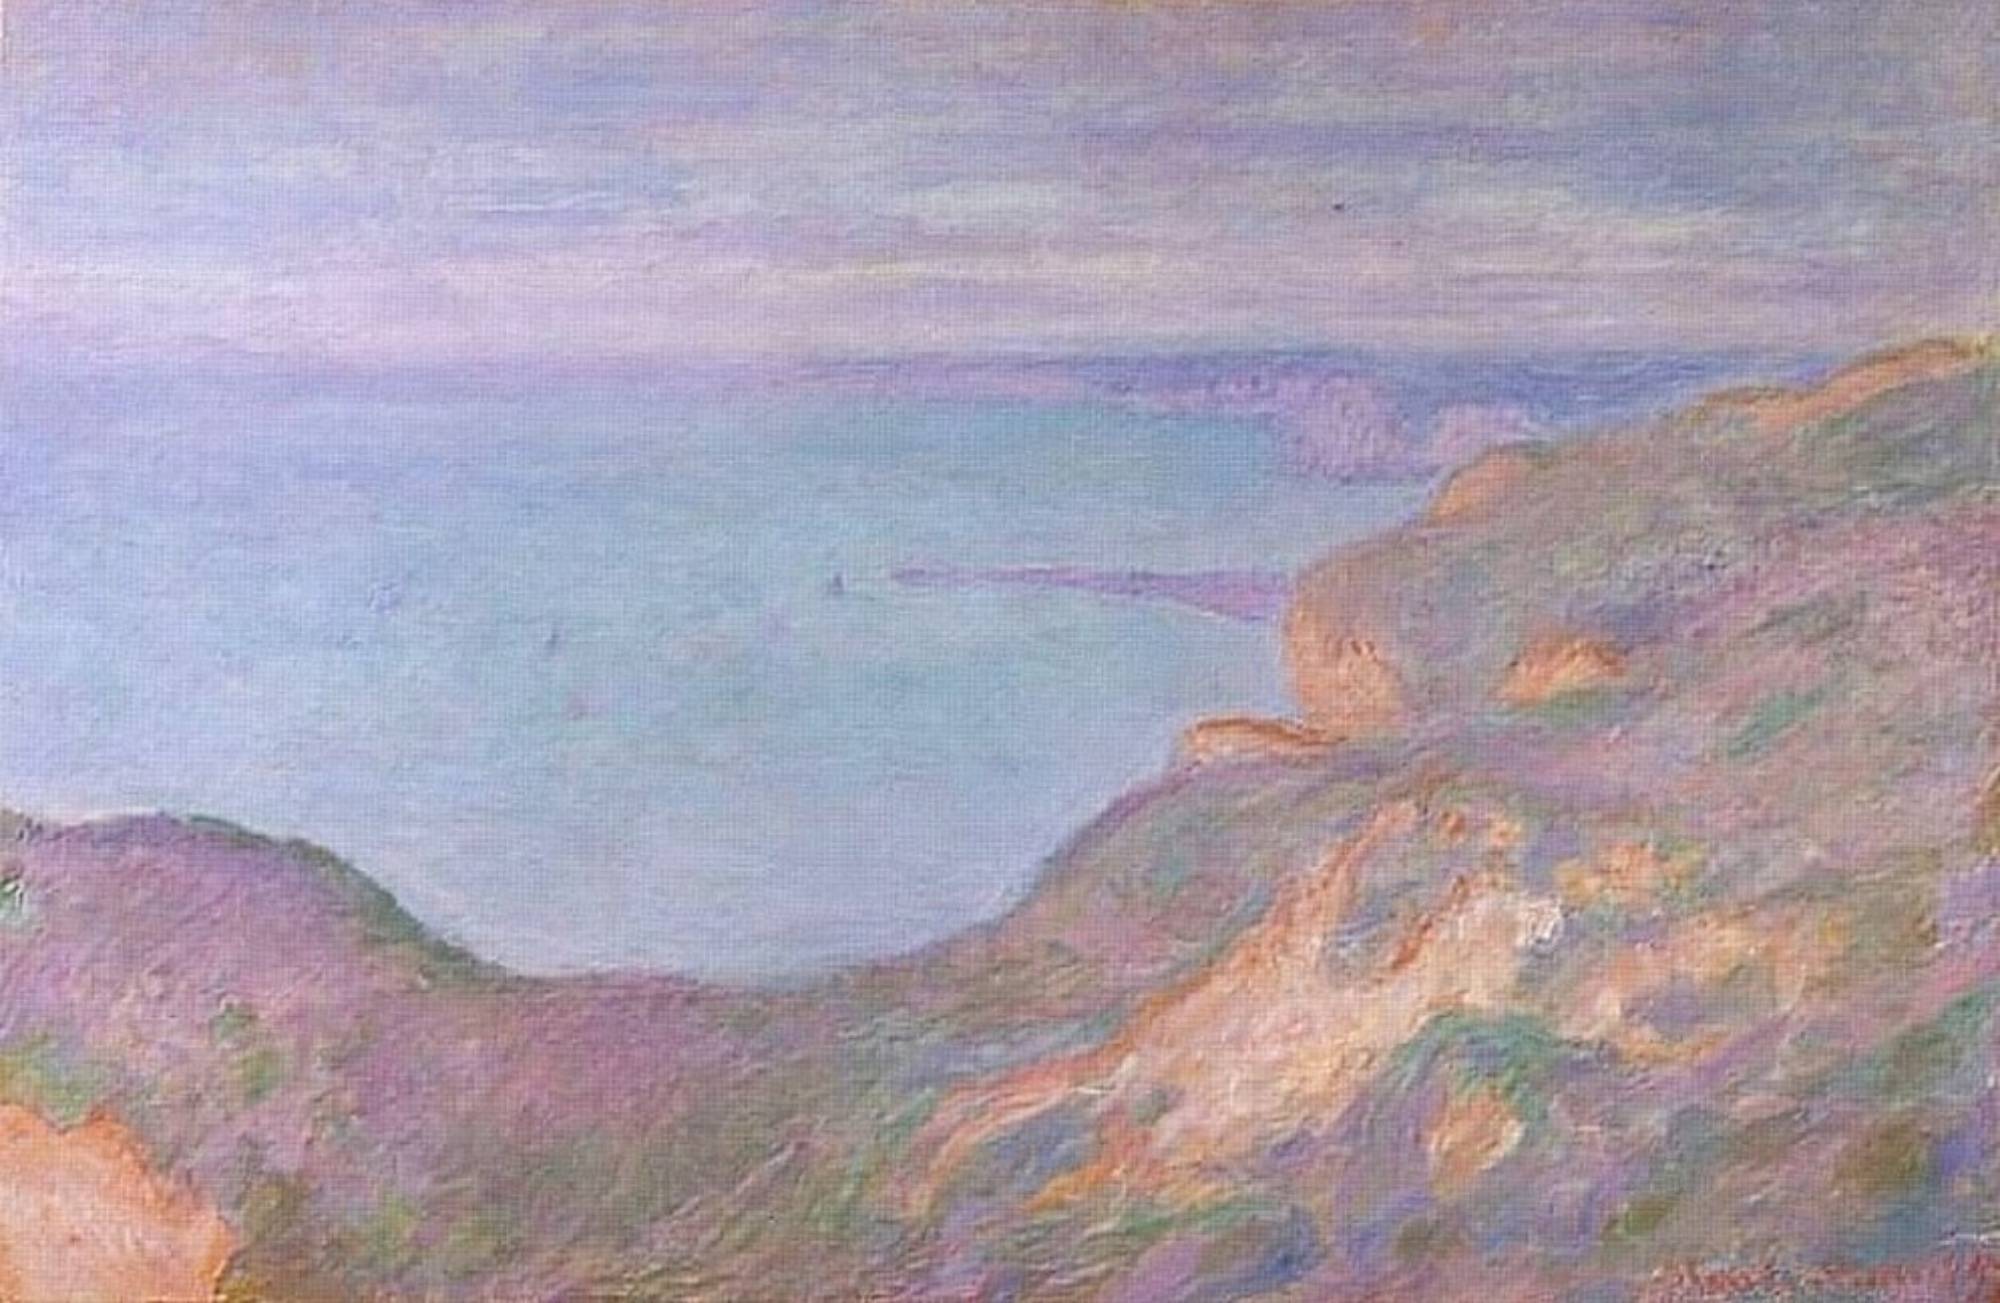 阿蒙特悬崖埃特尔塔的早晨查令十字桥是莫奈的系列油画之一